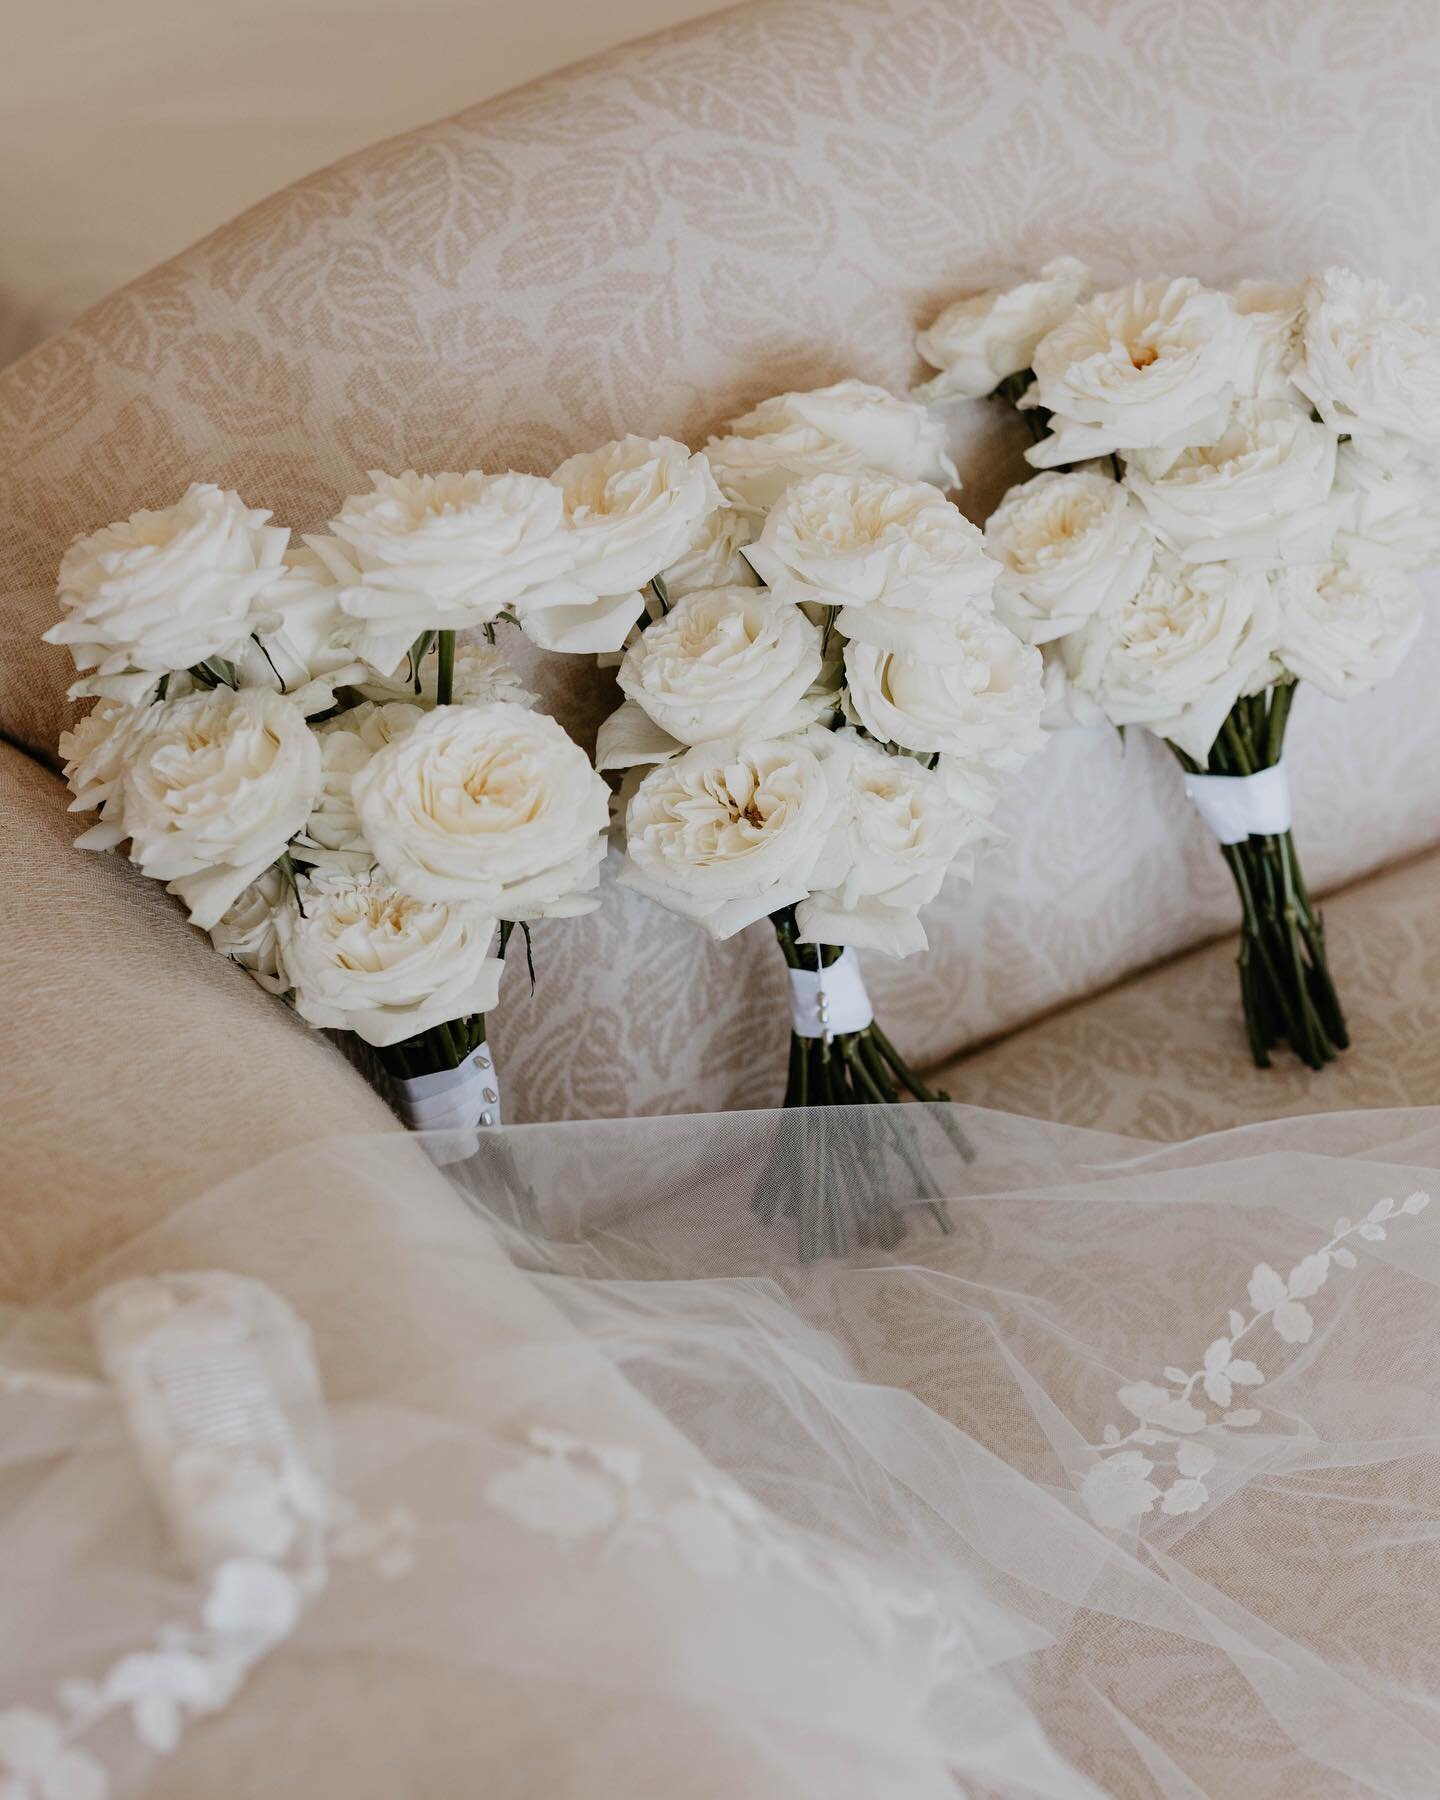 Cassie's bridesmaids bouquets along side her gorgeous veil 🖤 

#weddingdetails #weddingbouquet #rosebouquet #graceloveslace